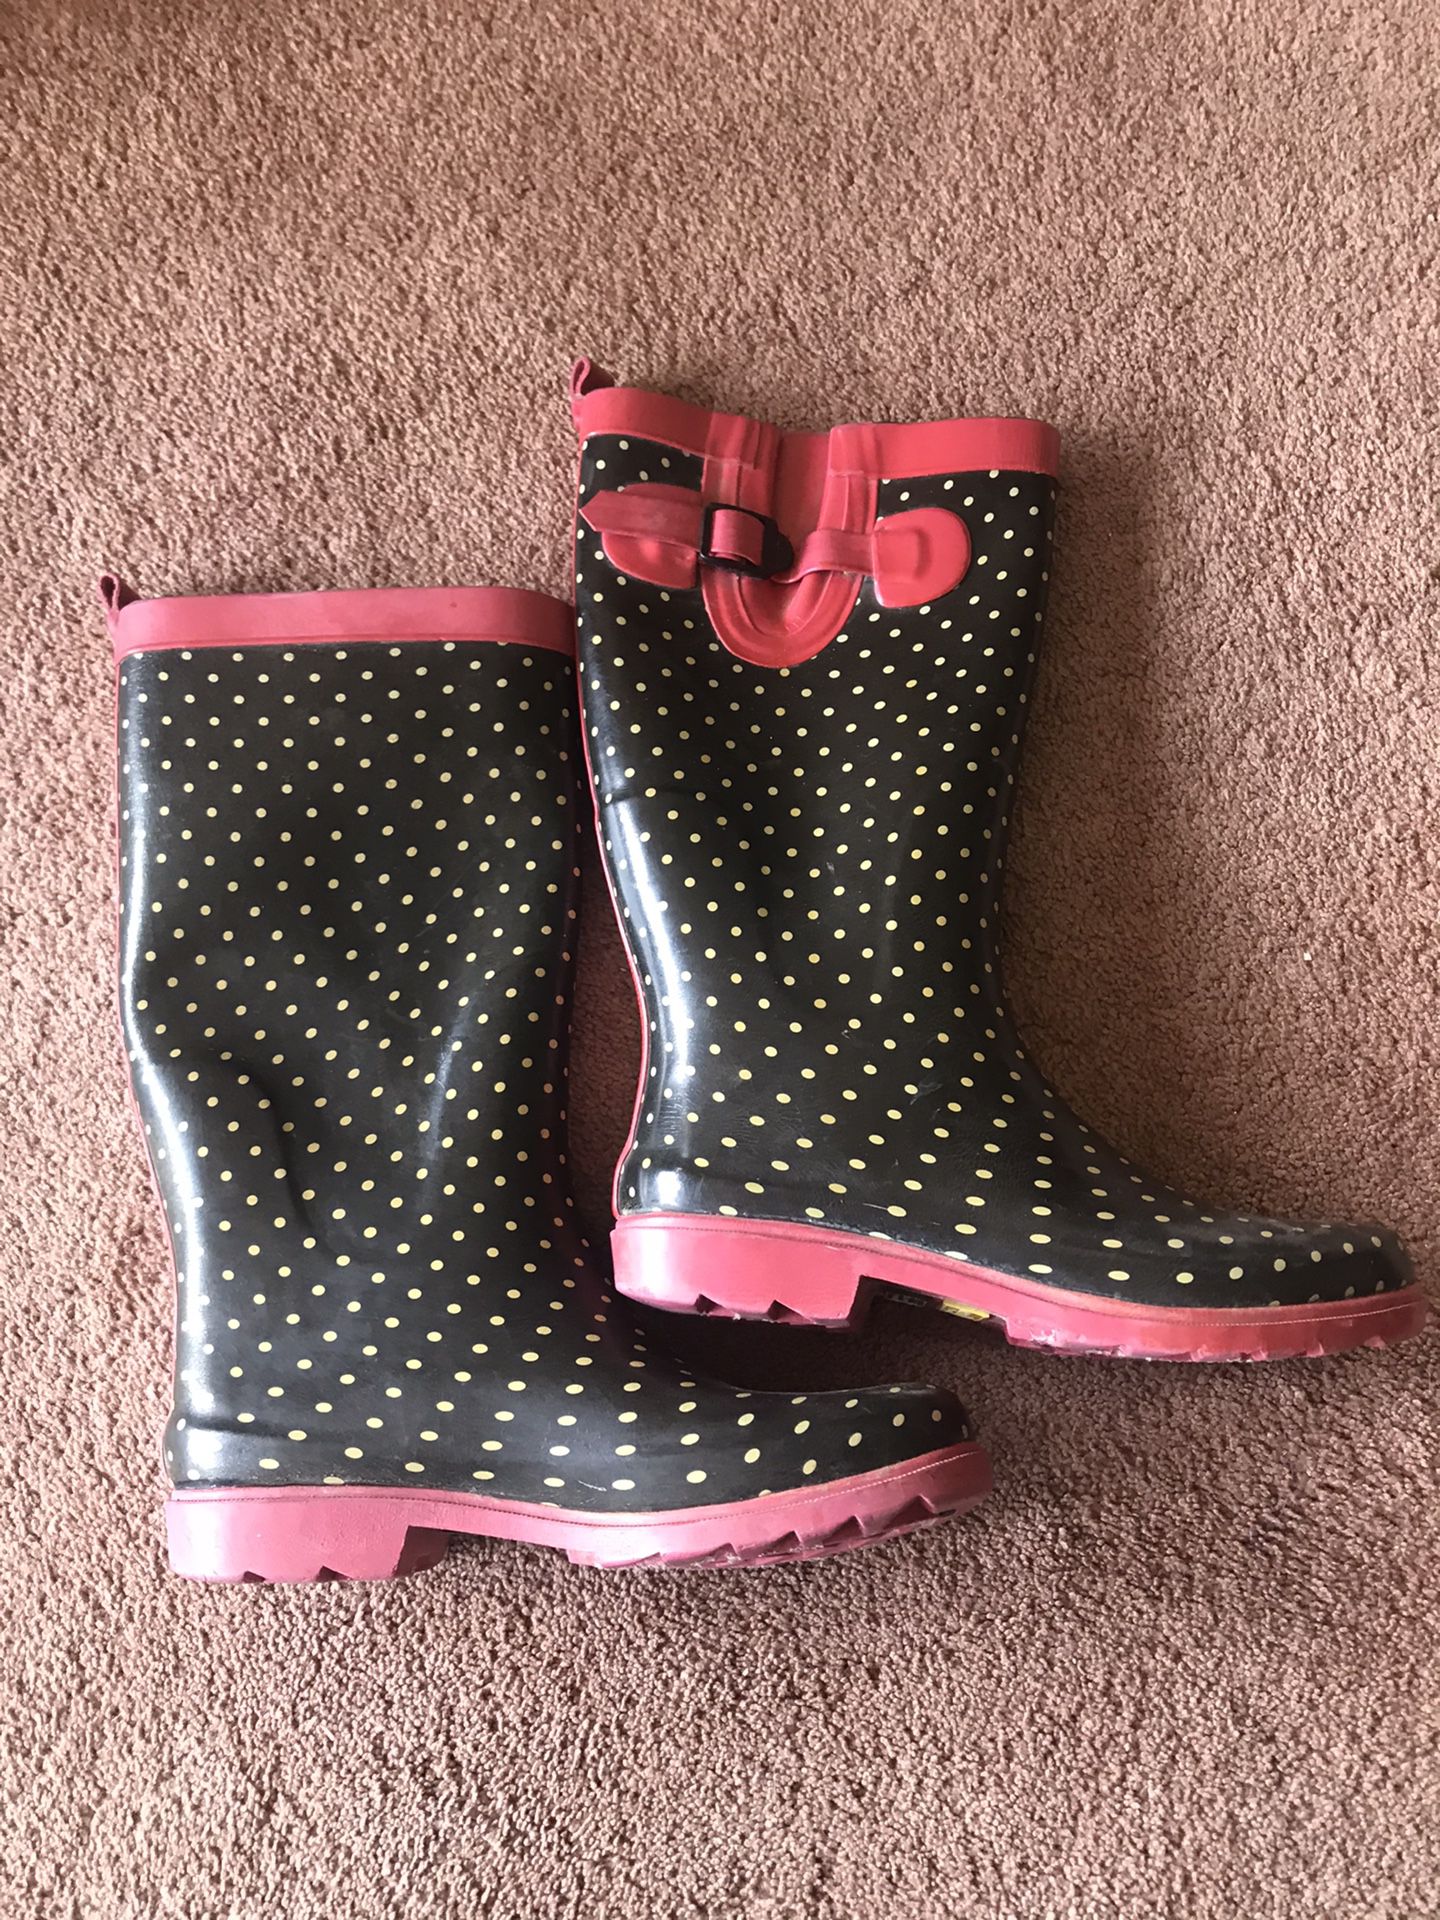 Polka Dot Rain Boots size 8